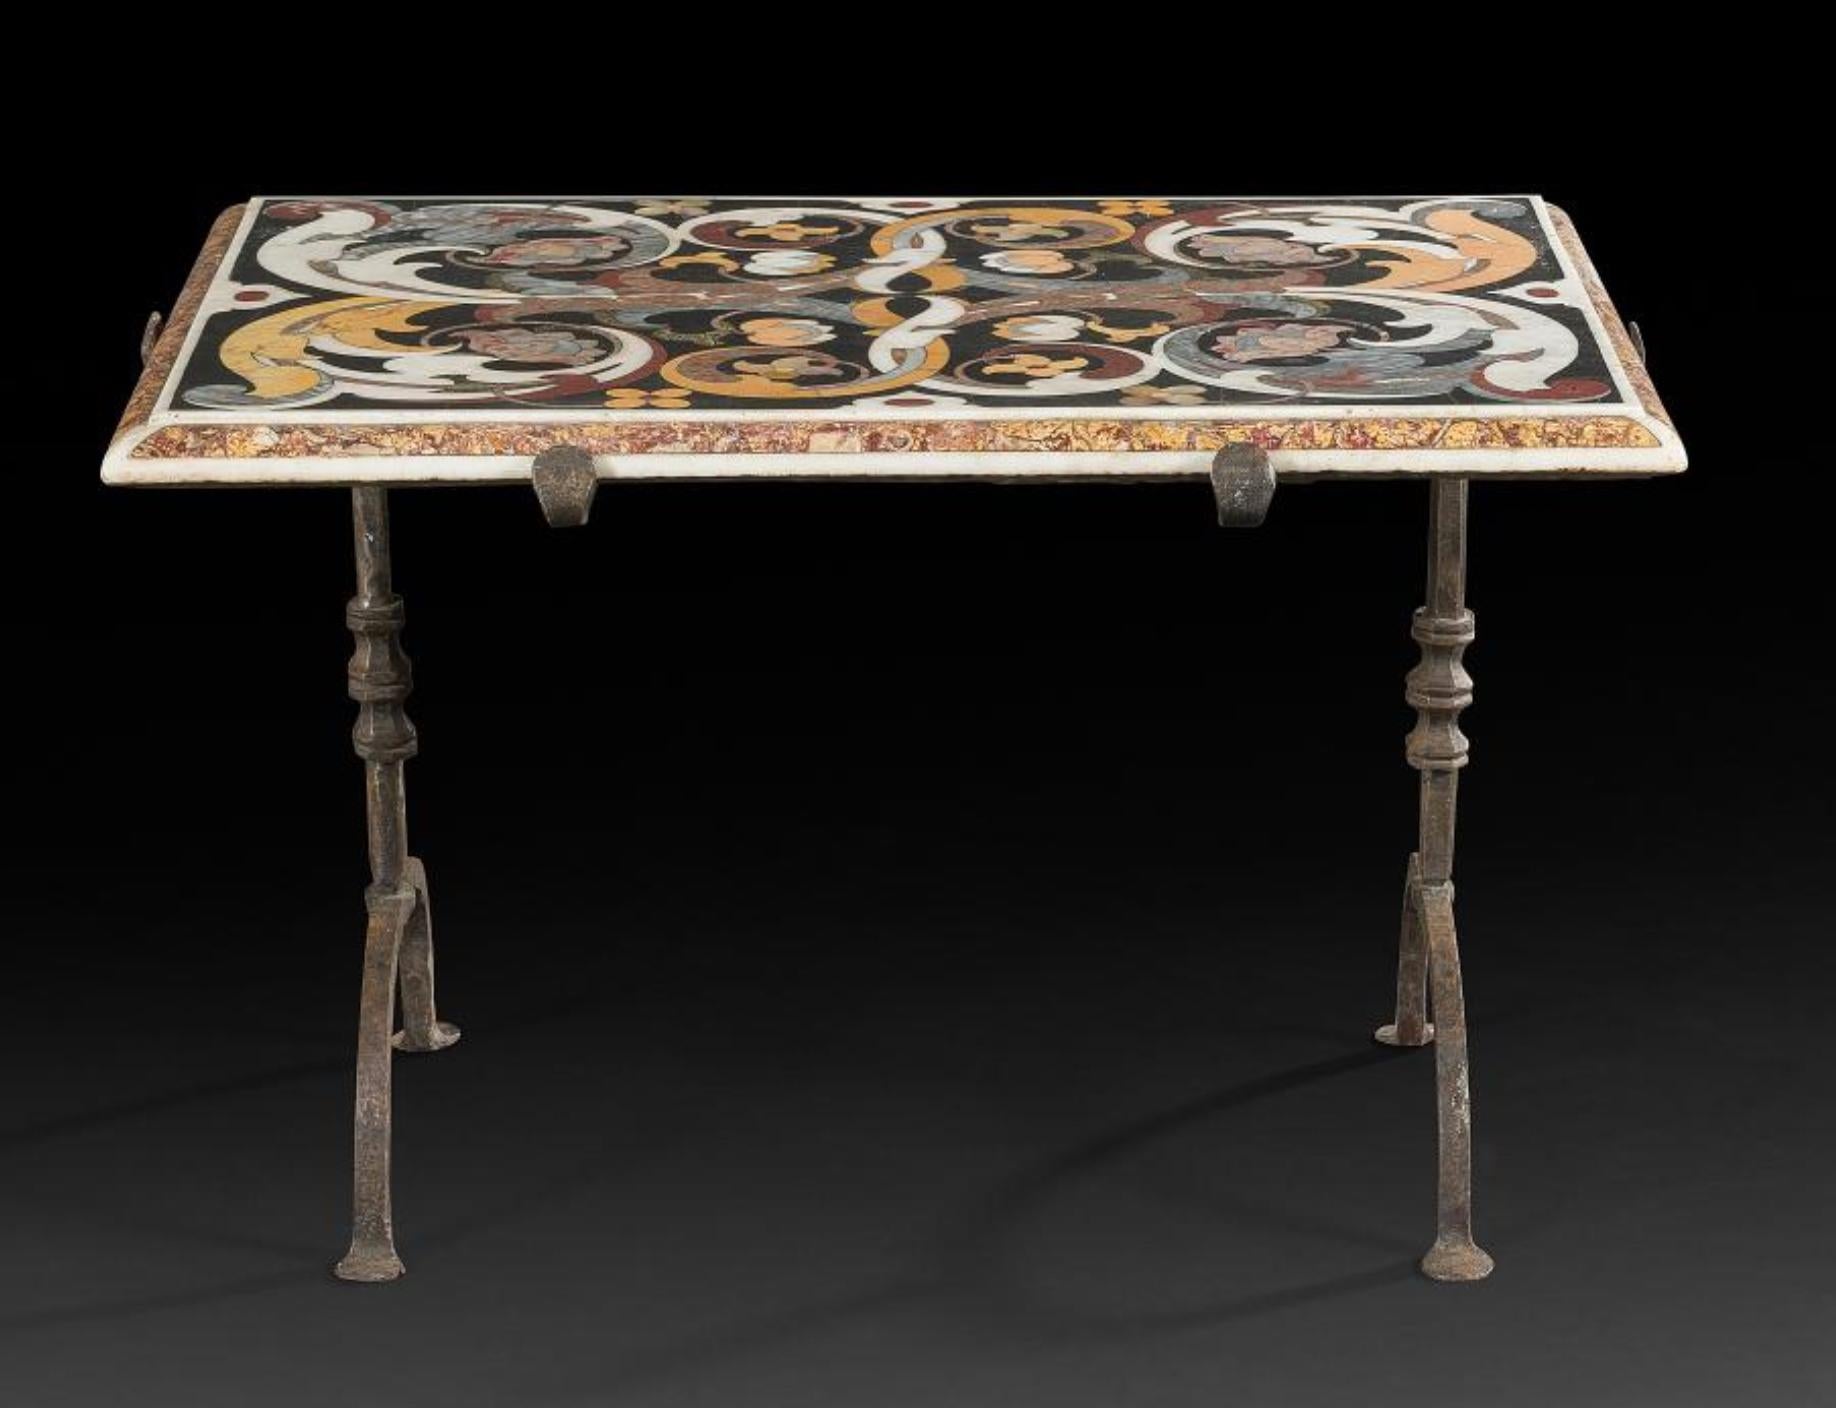 Seltener Tisch mit Intarsien aus mehrfarbigem Marmor auf schmiedeeisernen Beinen.
Hergestellt im 17. Jahrhundert im typisch florentinischen Stil mit vielen floralen Motiven auf schwarzem Grund.